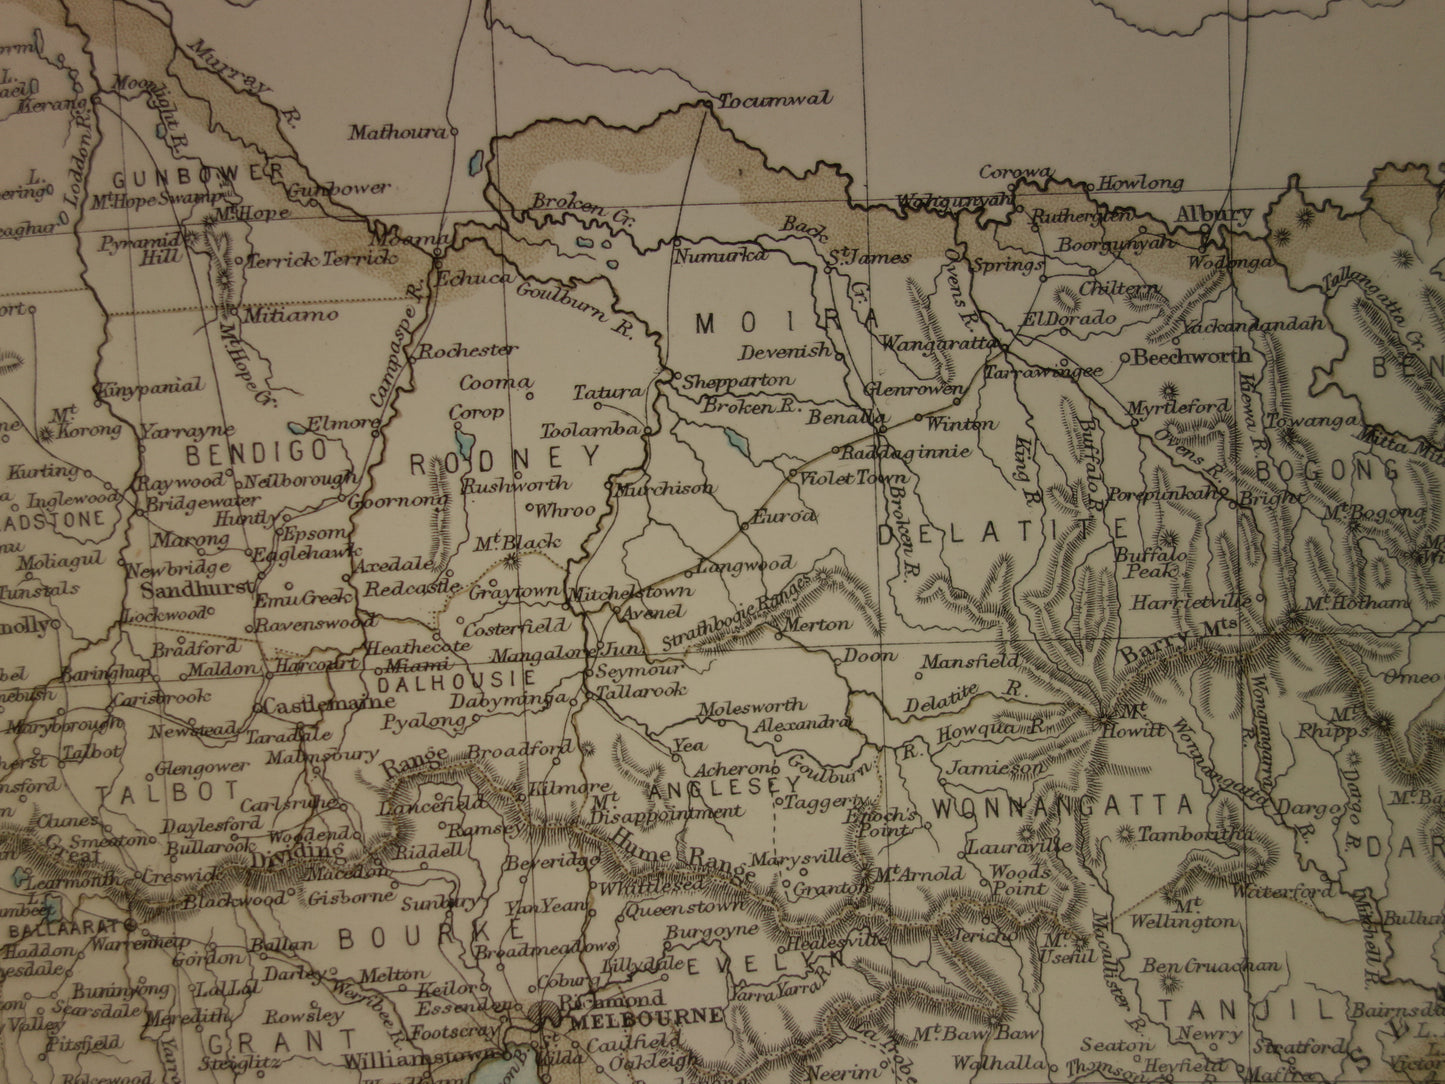 Antieke landkaart van de staat Victoria in Australië 1888 originele oude kaart Melbourne Vic te koop